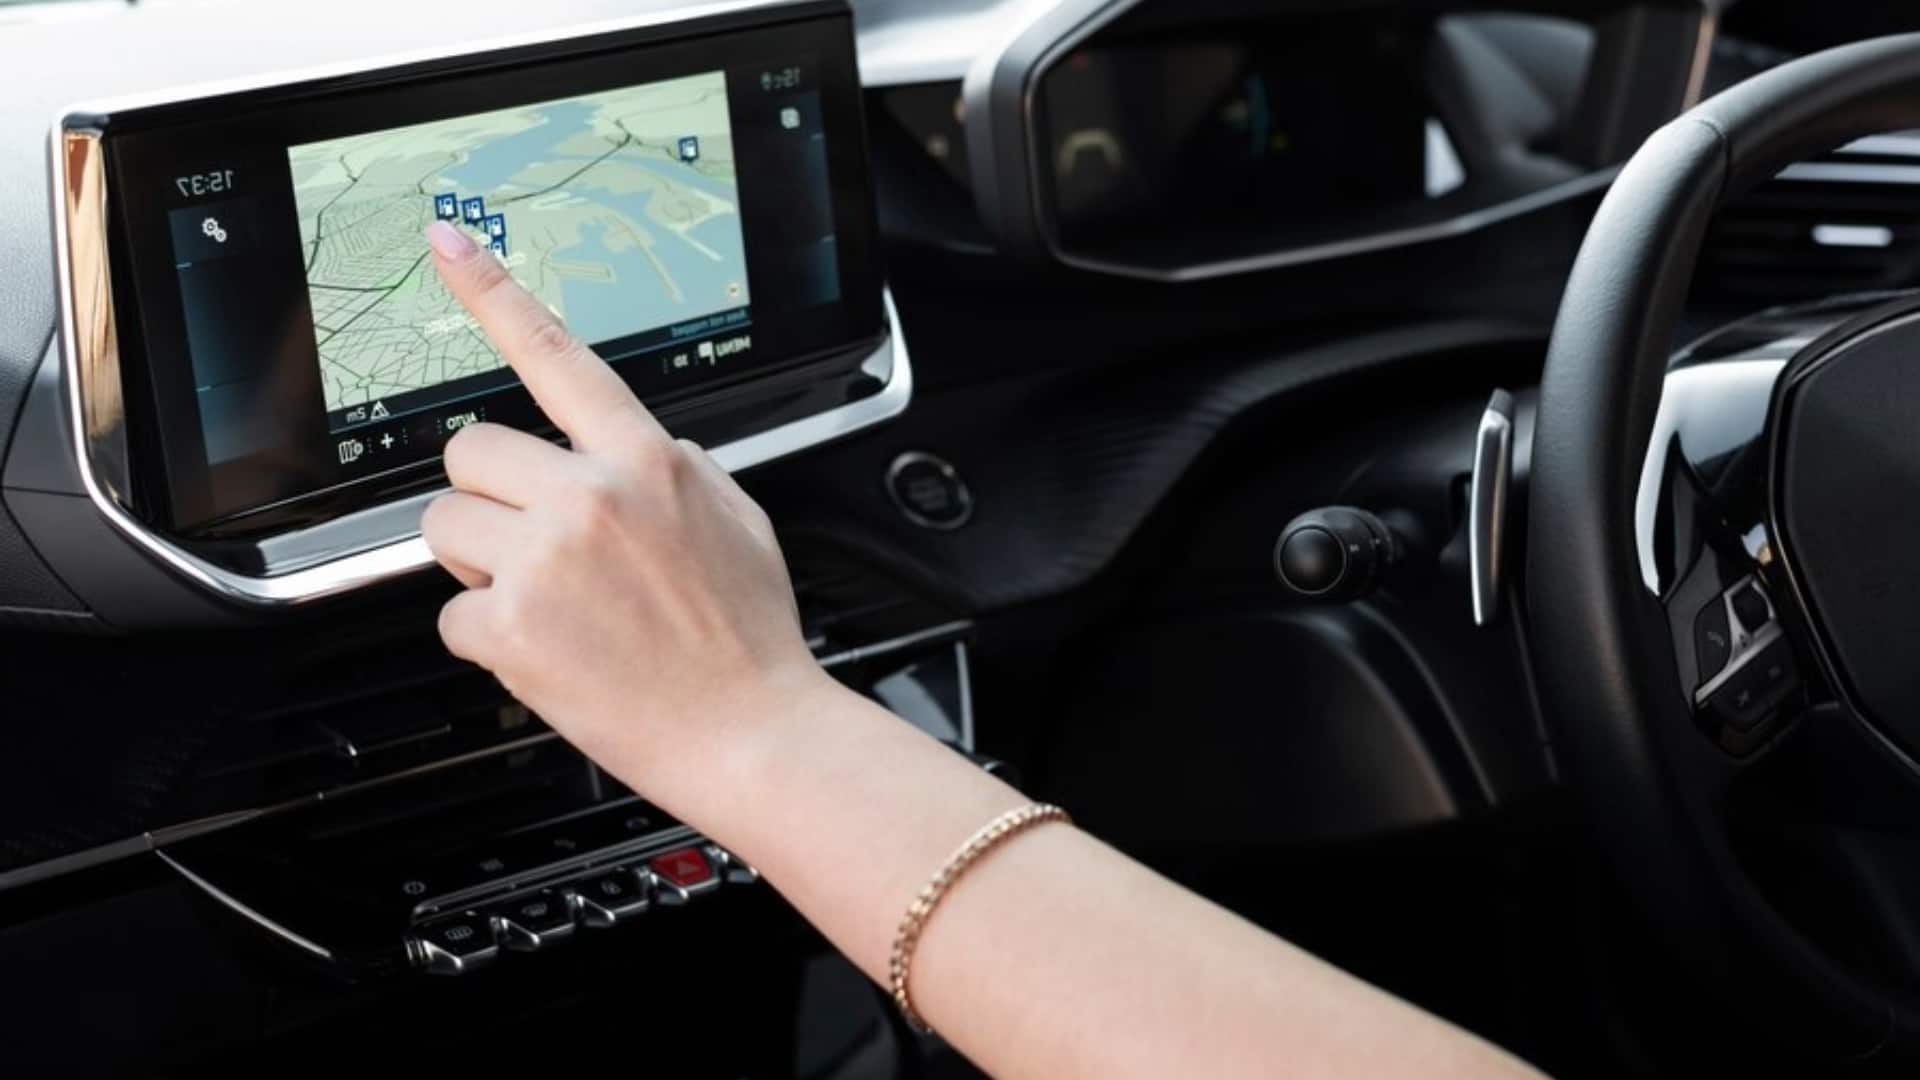 कार चलाते समय ऐसे करें GPS नेविगेशन का सुरक्षित उपयोग, नहीं आएगी कोई परेशानी 